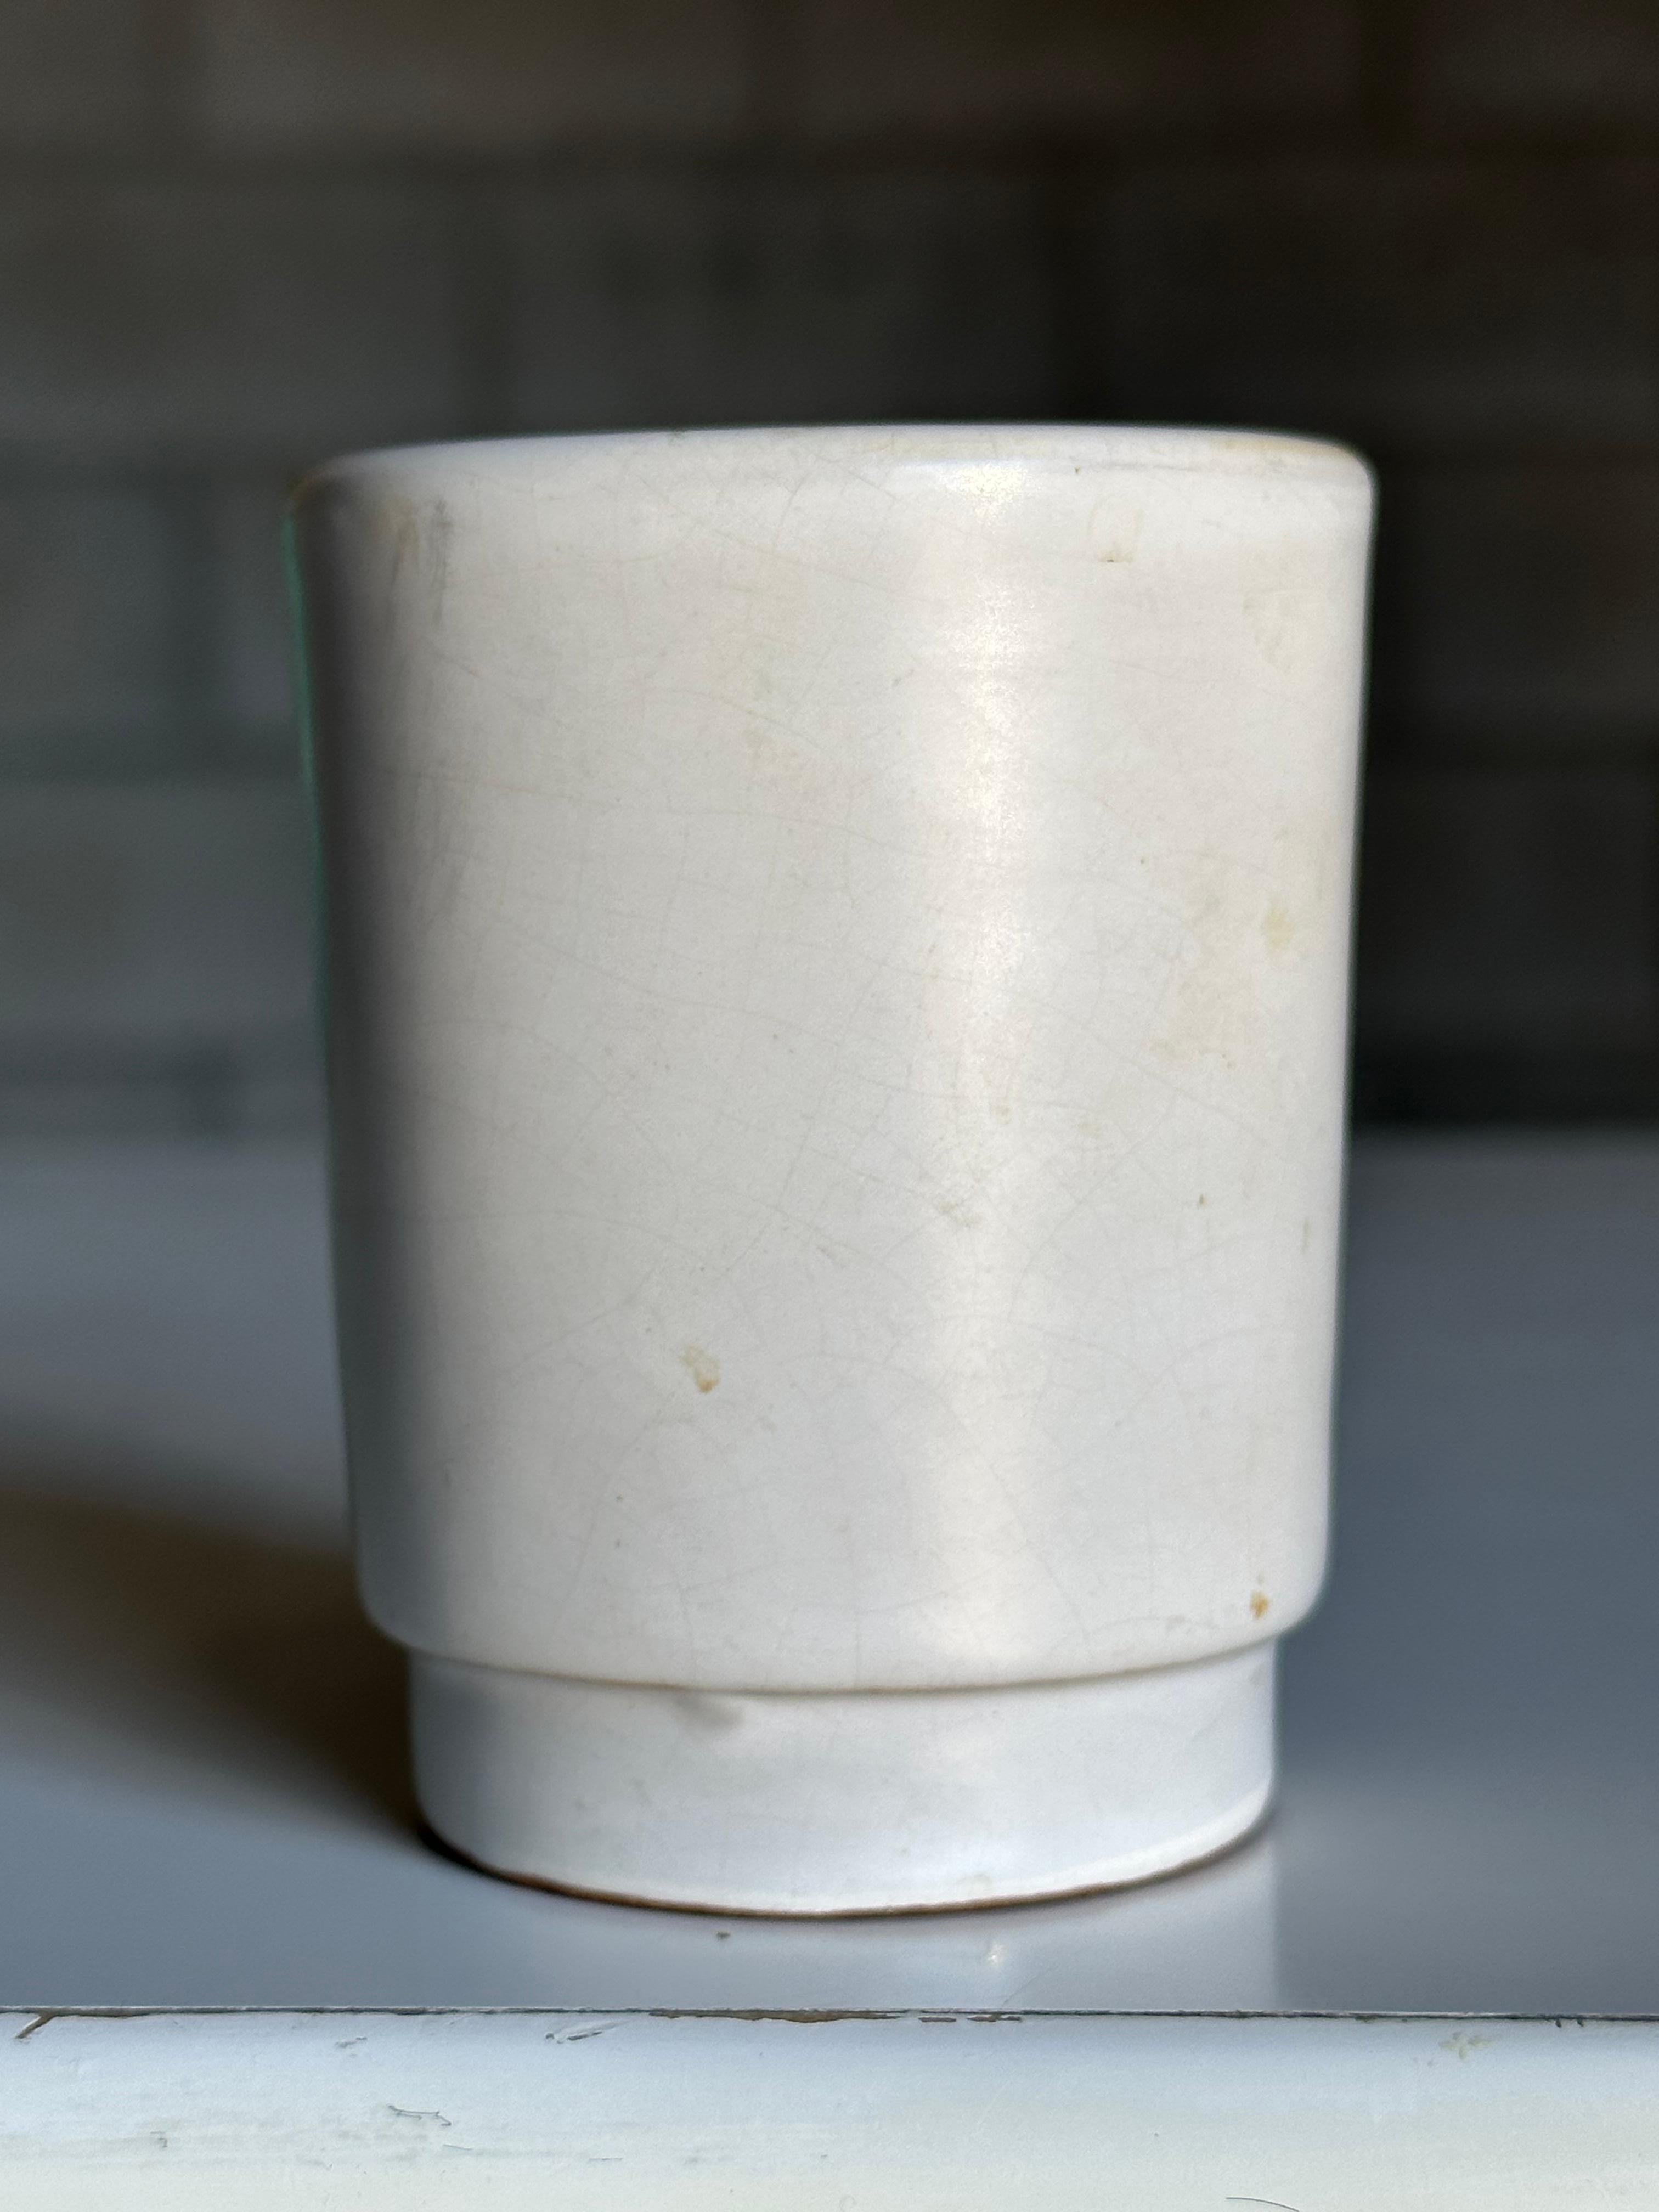 Magnifique petit vase produit par Nittsjö et attribué à Jerk Werkmäster. Ce vase de forme classique et de palette minimaliste peut être utilisé dans une variété de décors d'intérieur - minimaliste, moderne, contemporain, moderne organique,